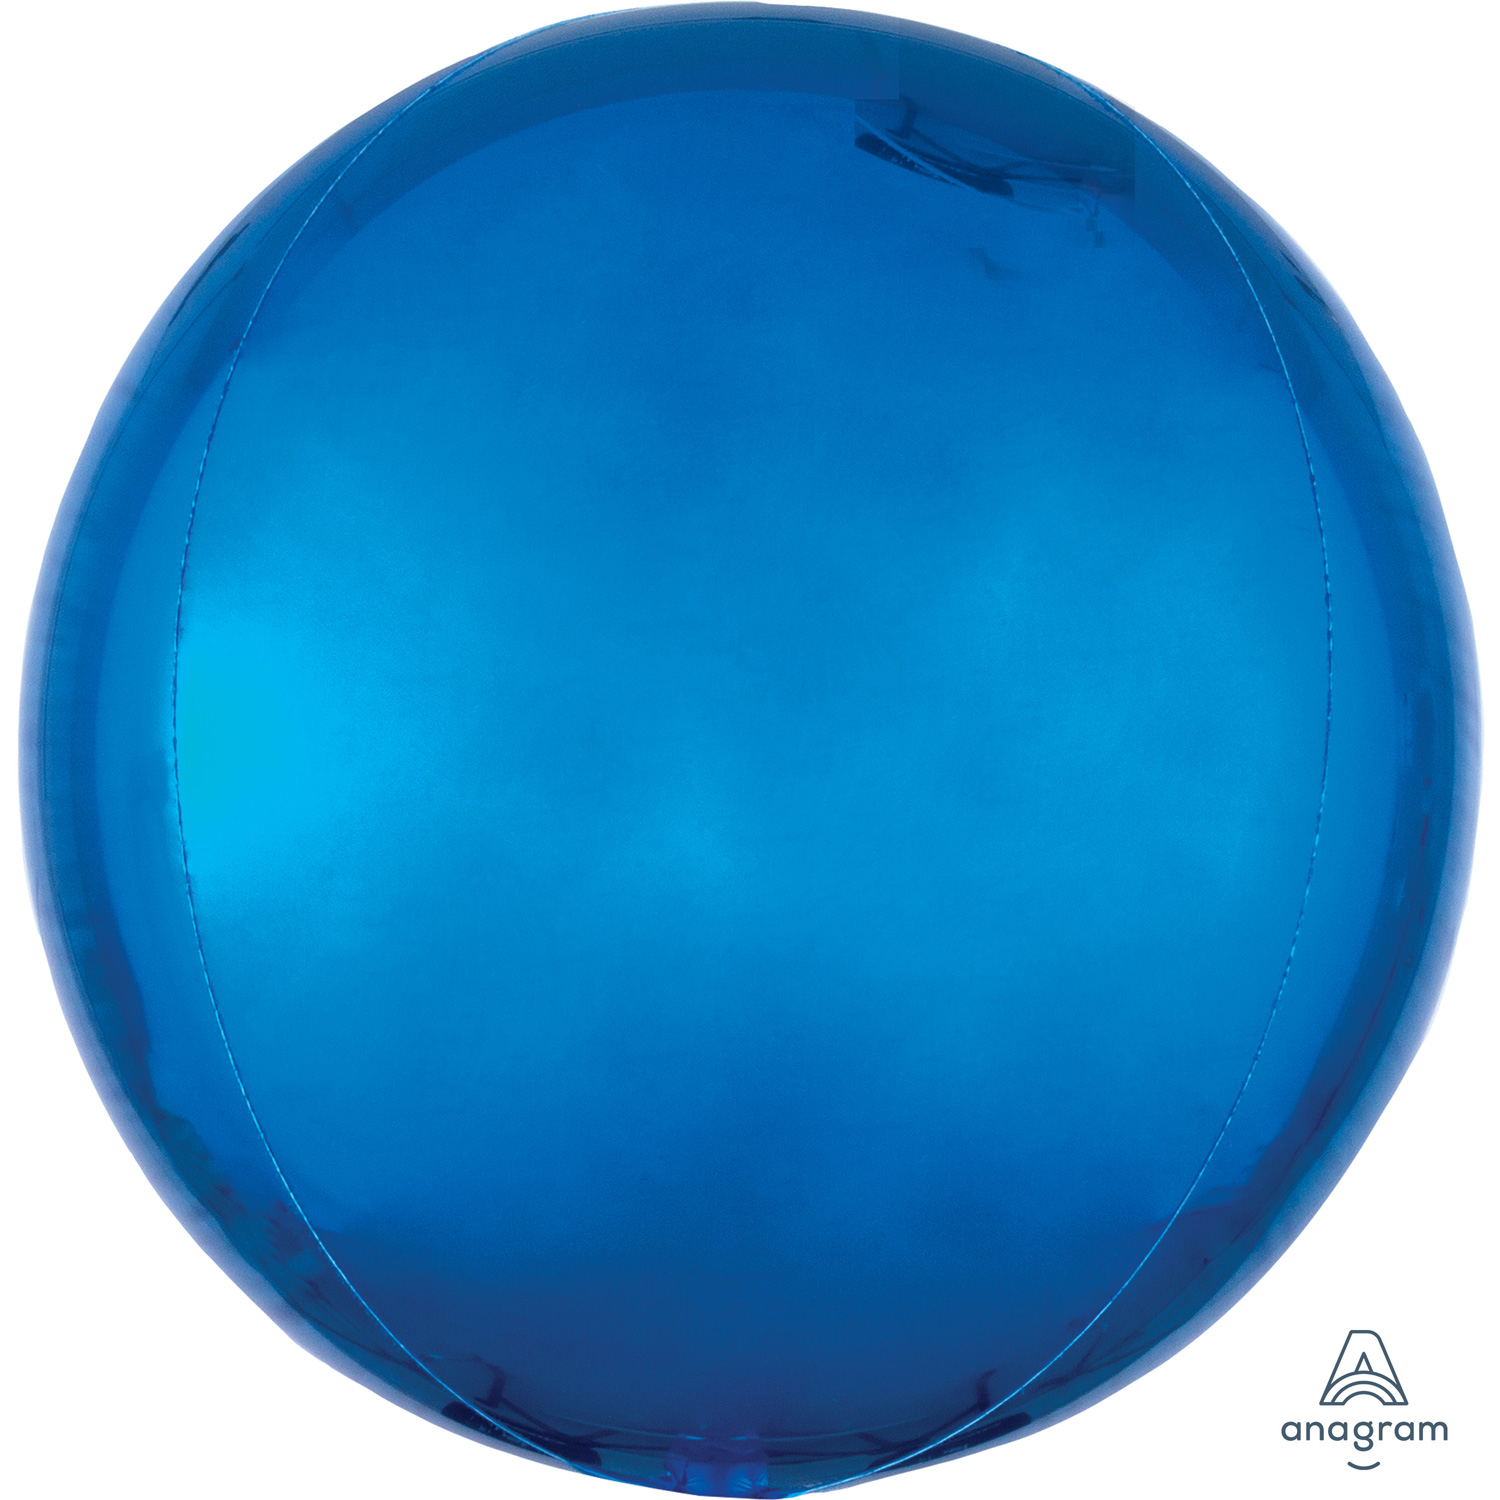 5 д шар. Синий воздушный шарик. Голубой шар. Синяя сфера. Синий шарик круглый.